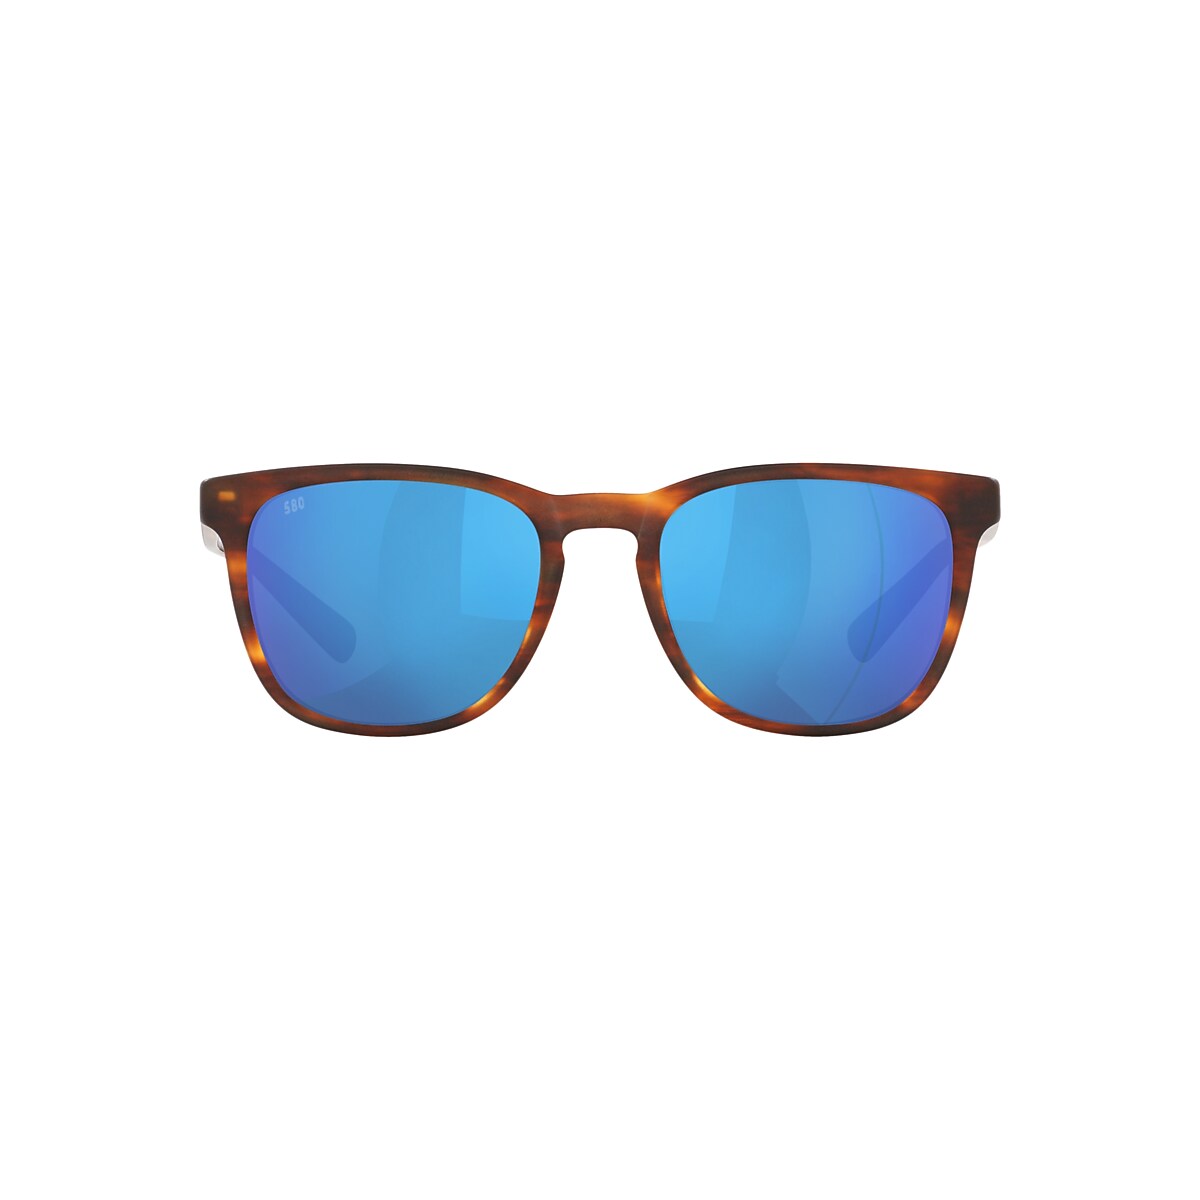 Sullivan Polarized Sunglasses in Blue Mirror